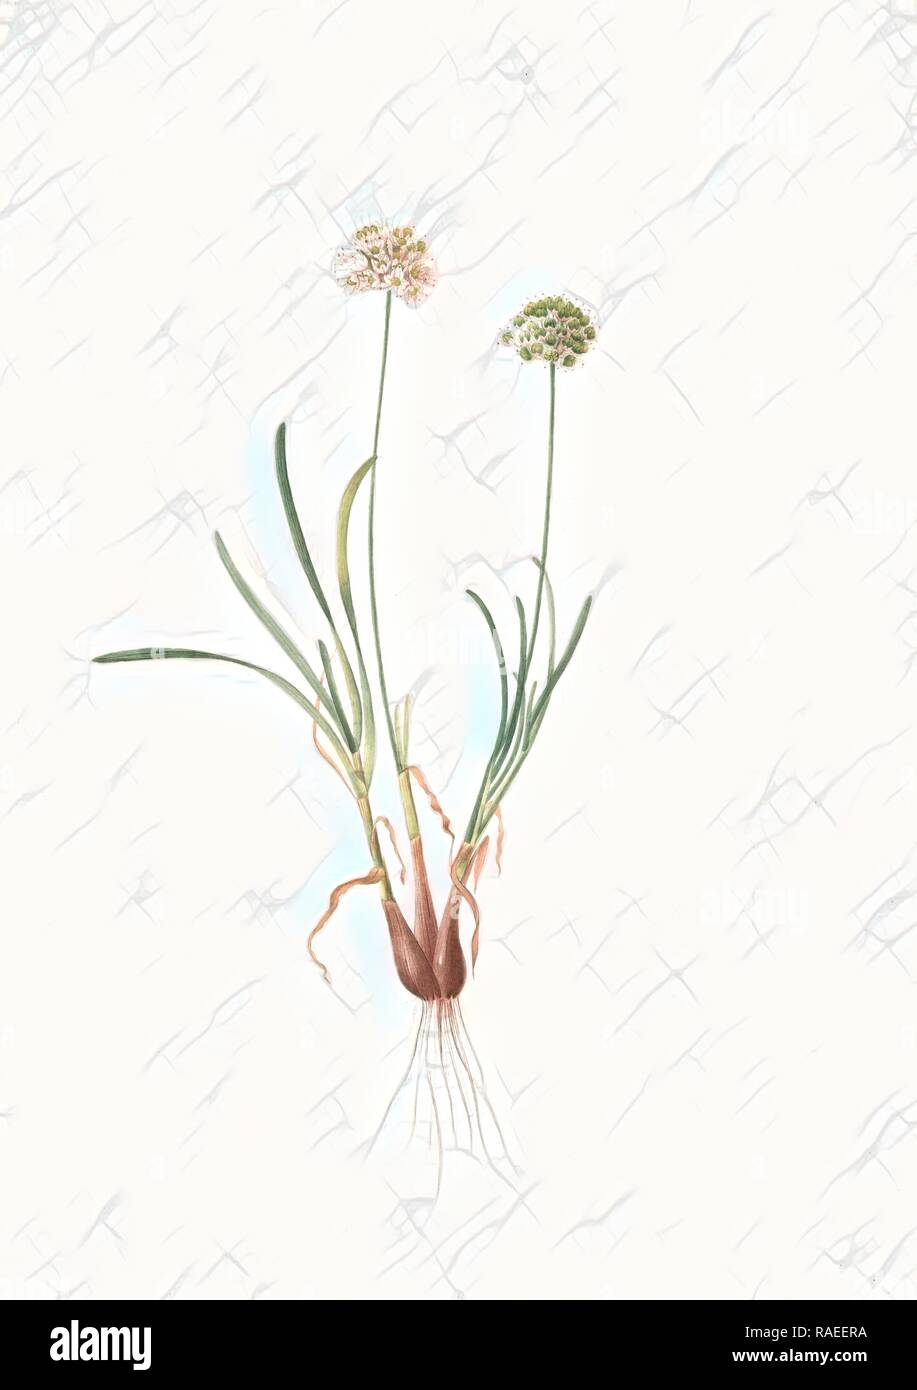 Allium carolinianum, Ail de Caroline, Redouté, Pierre Joseph, 1759-1840, les liliacees, 1802 - 181. Reimagined Stock Photo